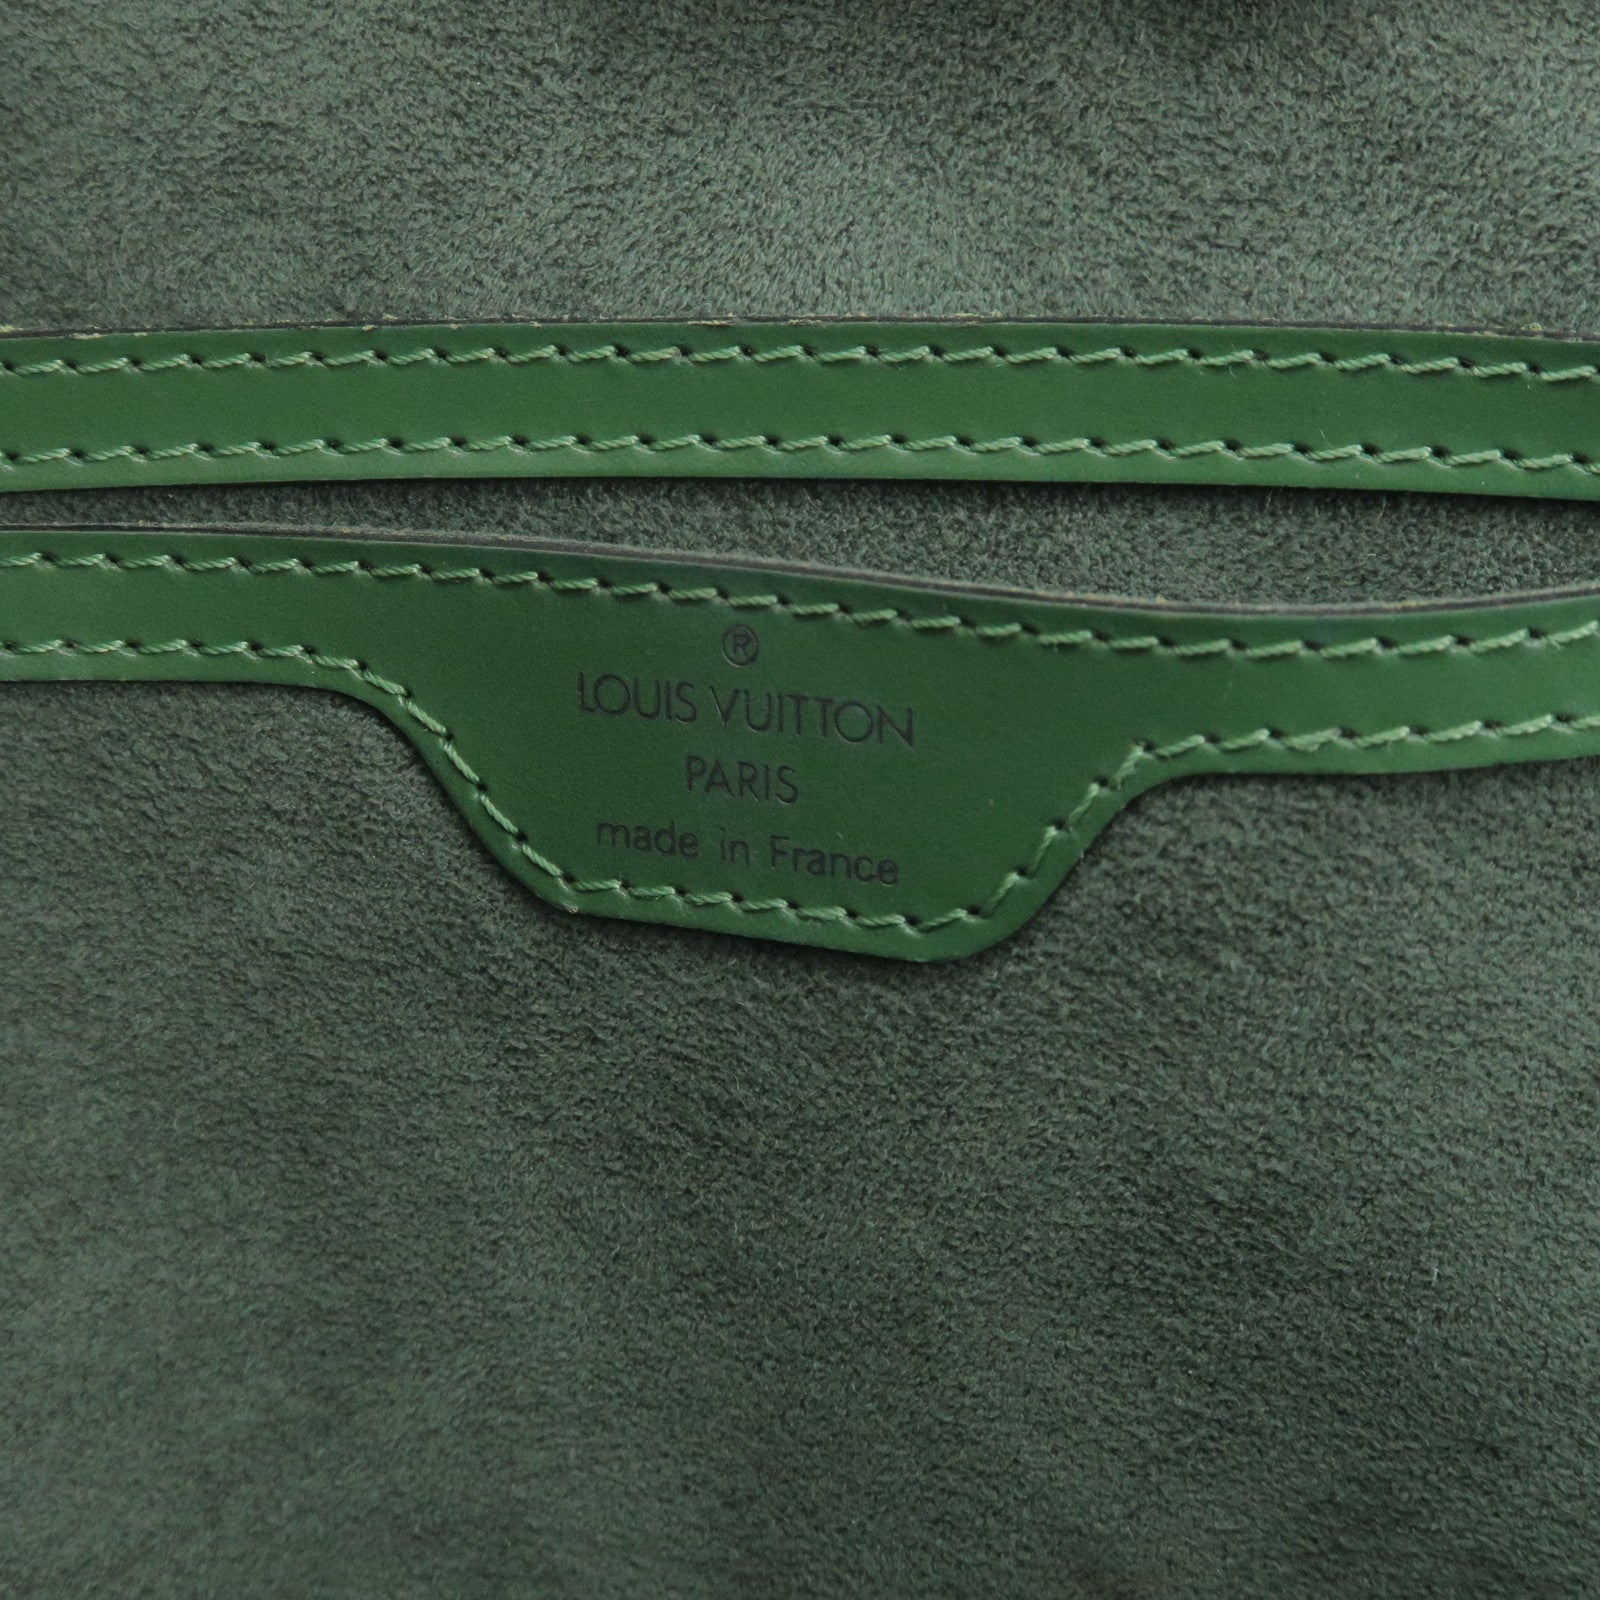 Vintage Louis Vuitton Saint Jacques Bag in Borneo Green